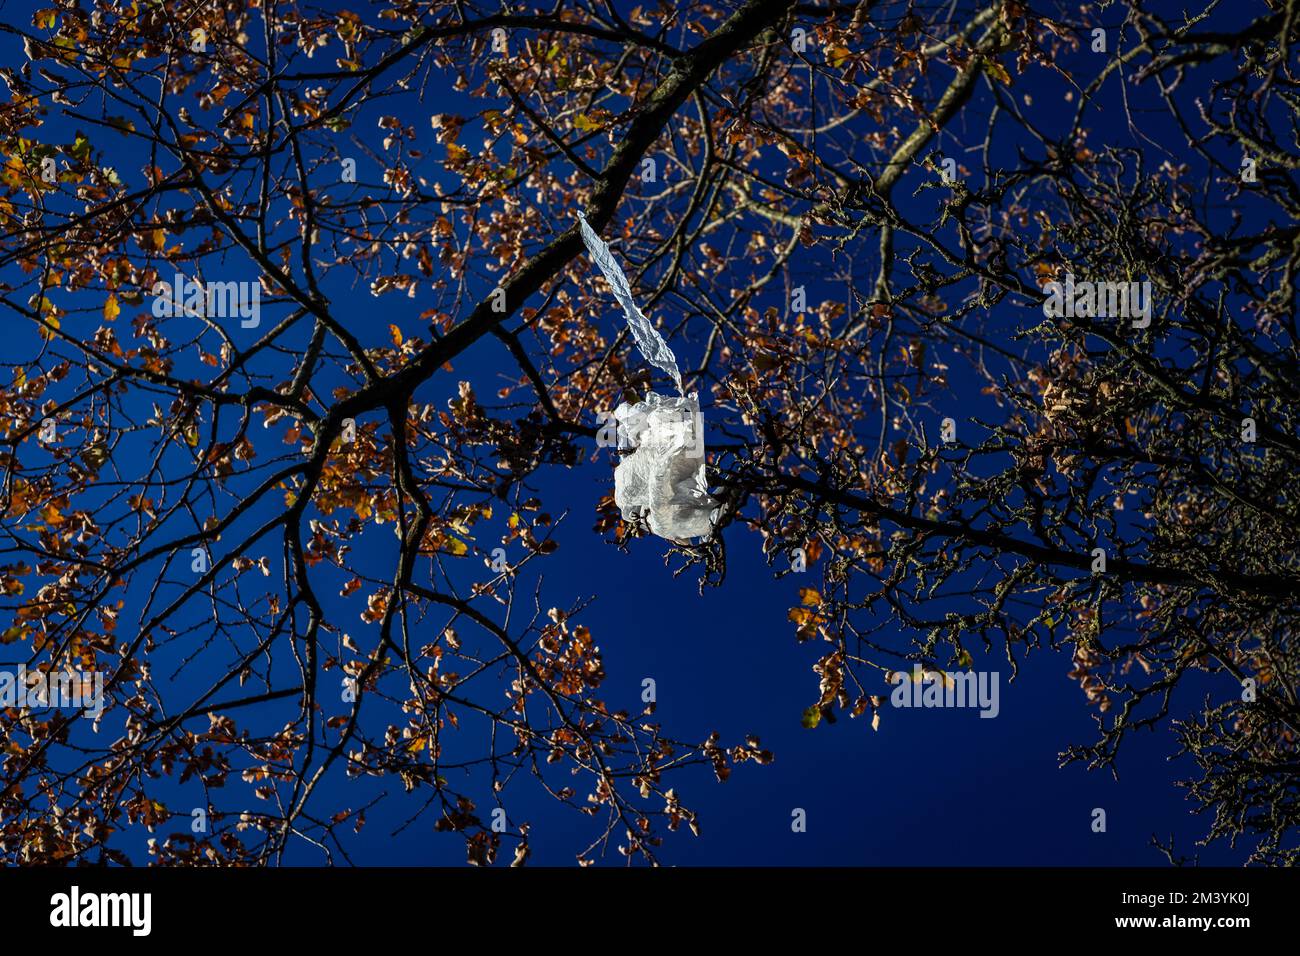 Eine weiße Plastiktüte steckt in einem Baum fest. Ein normalerweise schönes Foto, außer dem Müll im Baum. Ein wunderschöner blauer Himmel und ein Baum, der durch eine unerwünschte Tasche verdorben wurde! Stockfoto